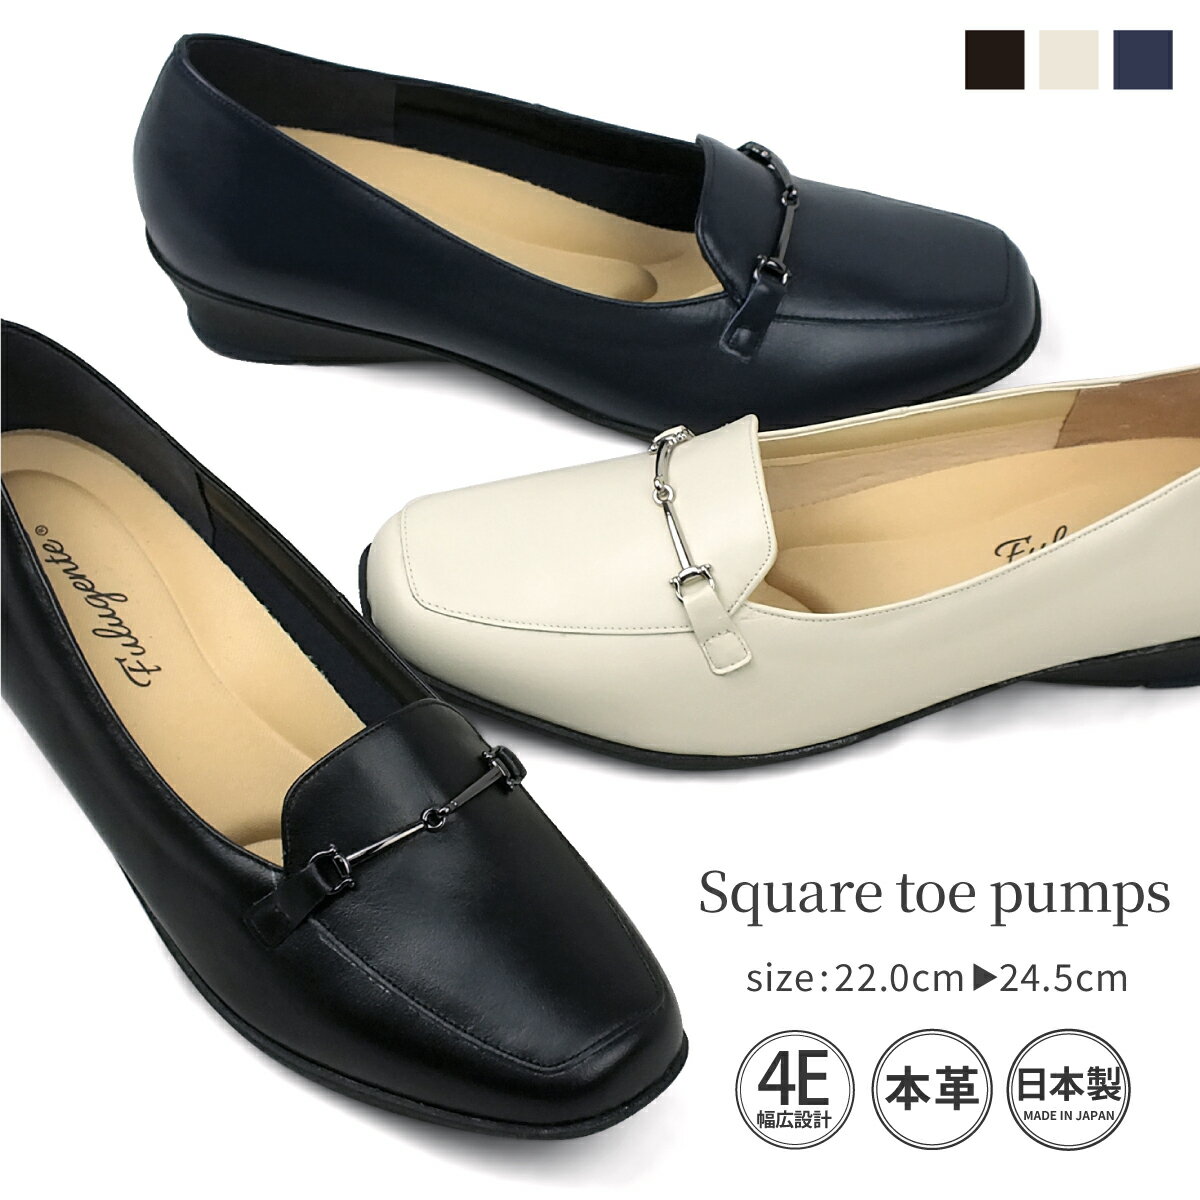 ビットローファーパンプス 本革 革靴 革製品 日本製 国産 スクエアトゥ ローファー パンプス 幅広設計 4E レディース…